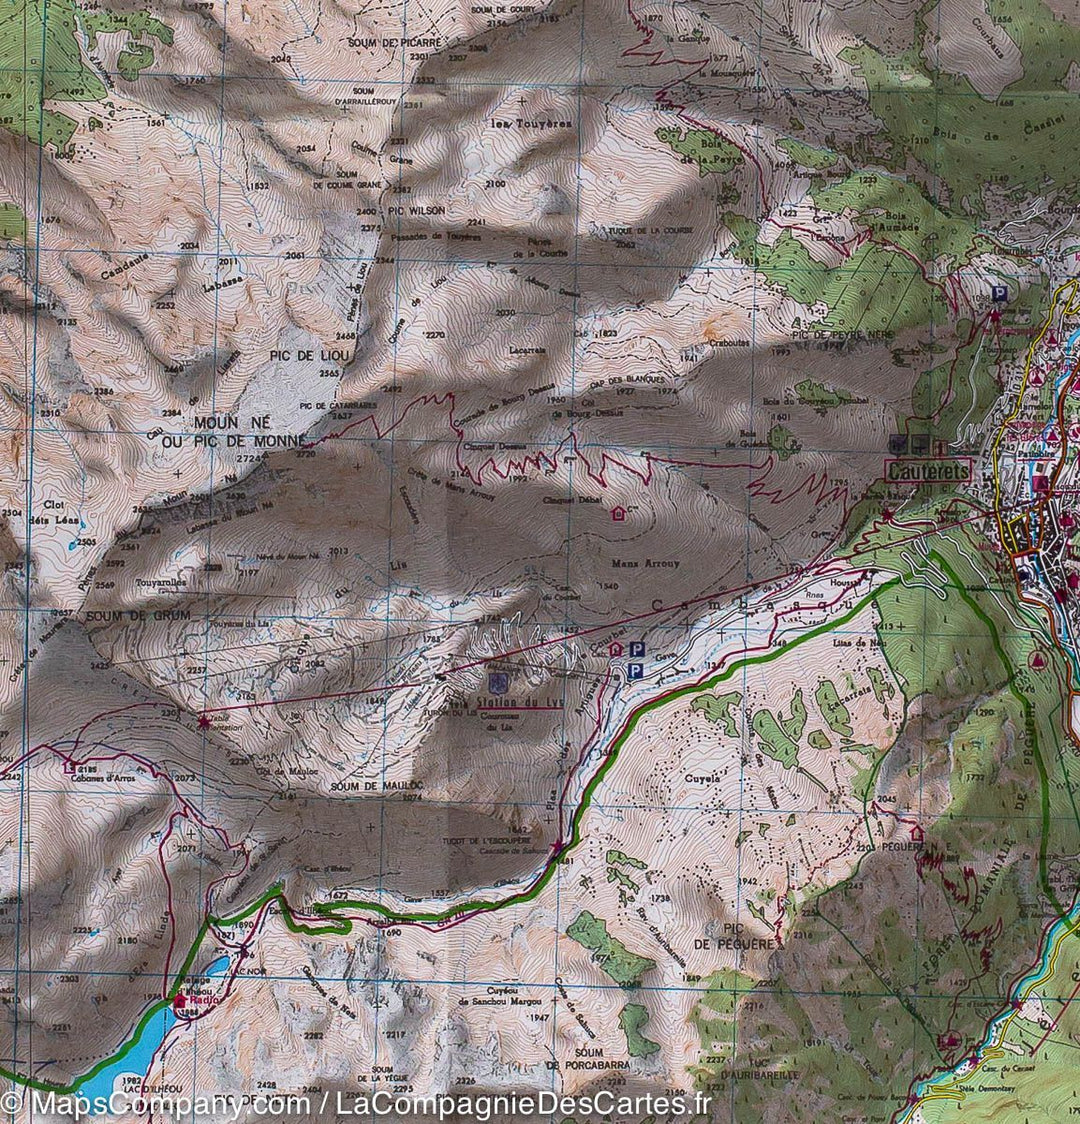 Carte TOP 25 n° 1647 OTR (résistante) - Vignemale, Vallée d'Ossau, Arrens, Cauterets (Pyrénées) | IGN carte pliée IGN 